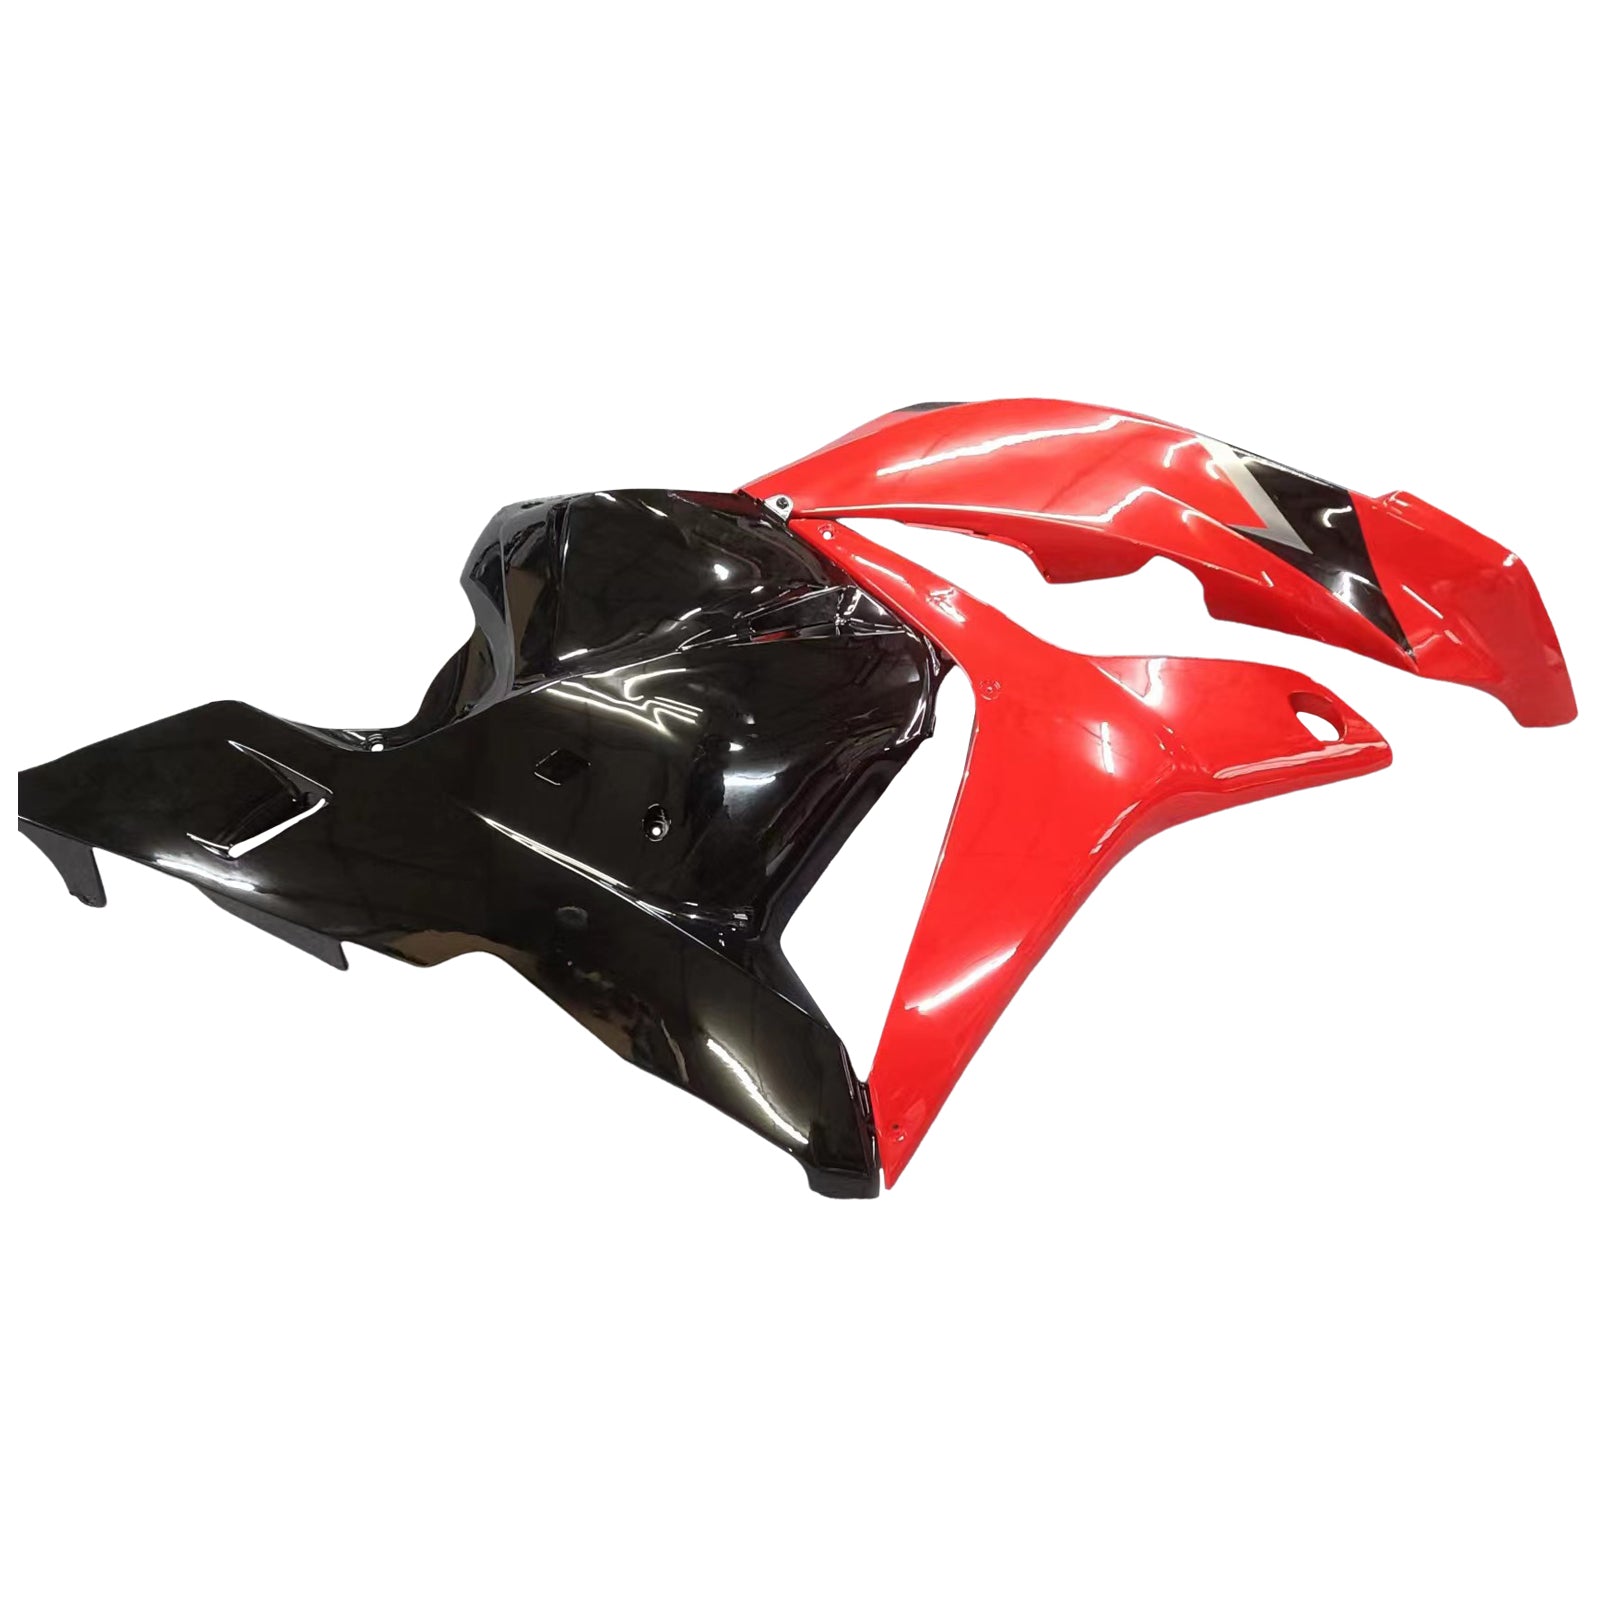 Amotopart 2009-2012 CBR600RR Honda carenatura rosso e nero